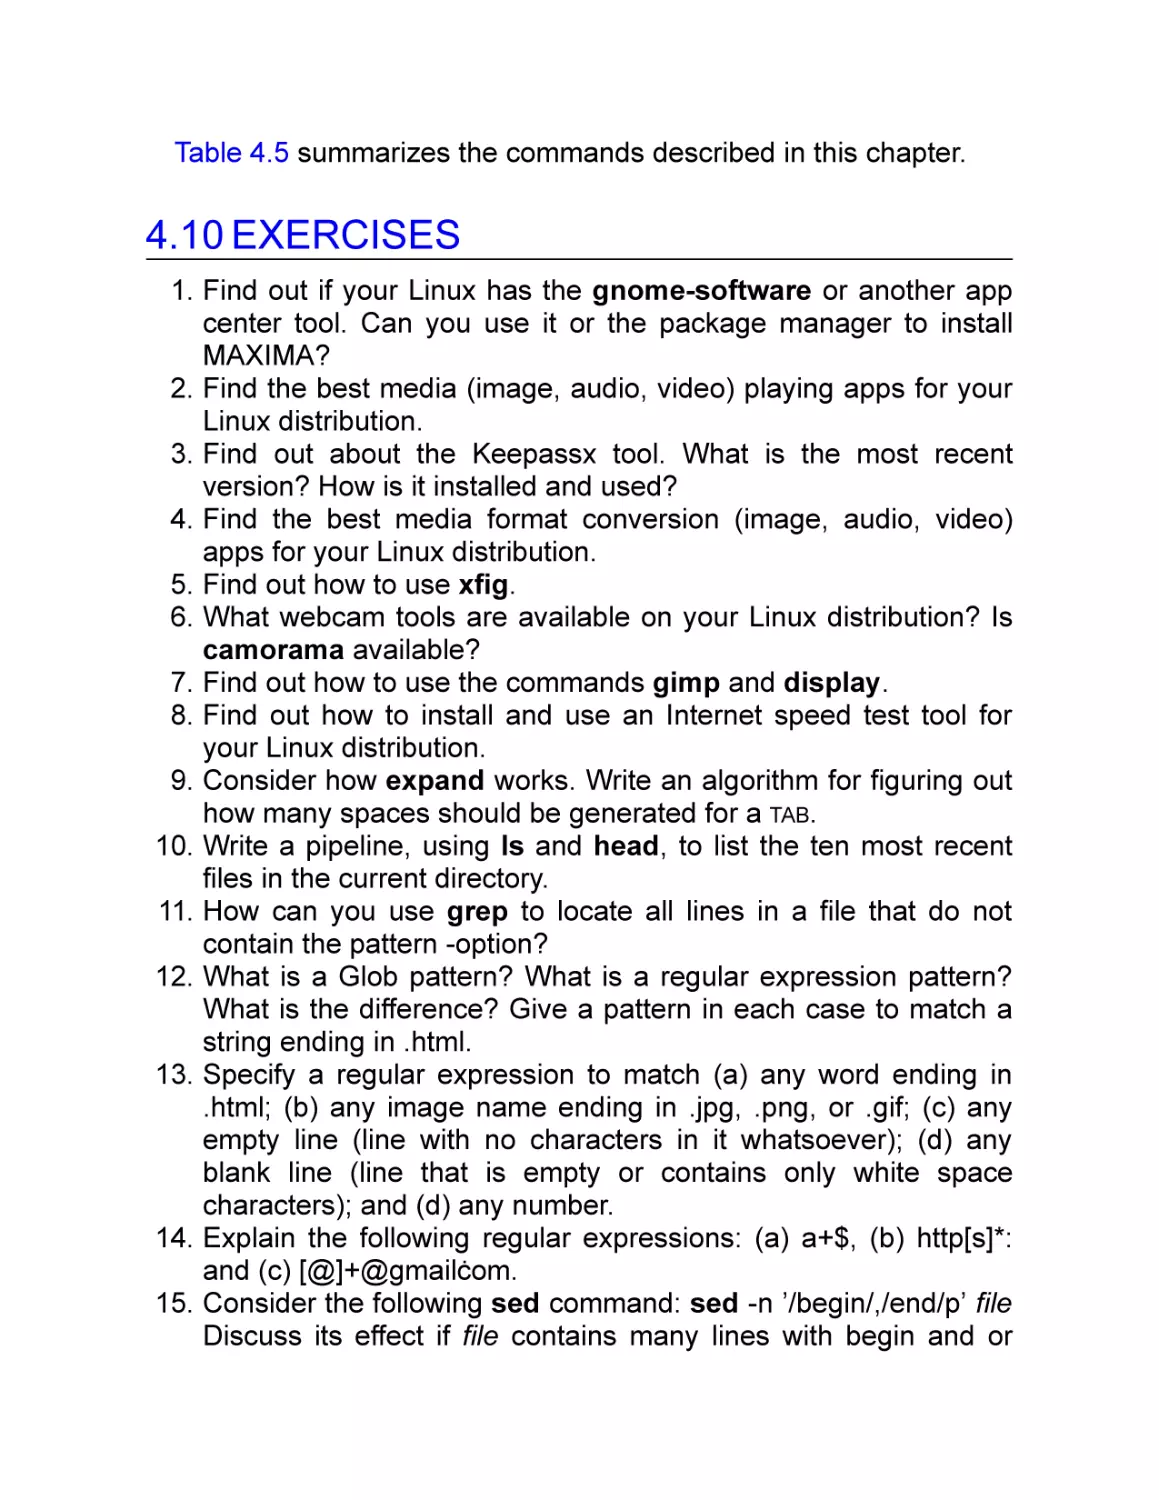 4.10 Exercises